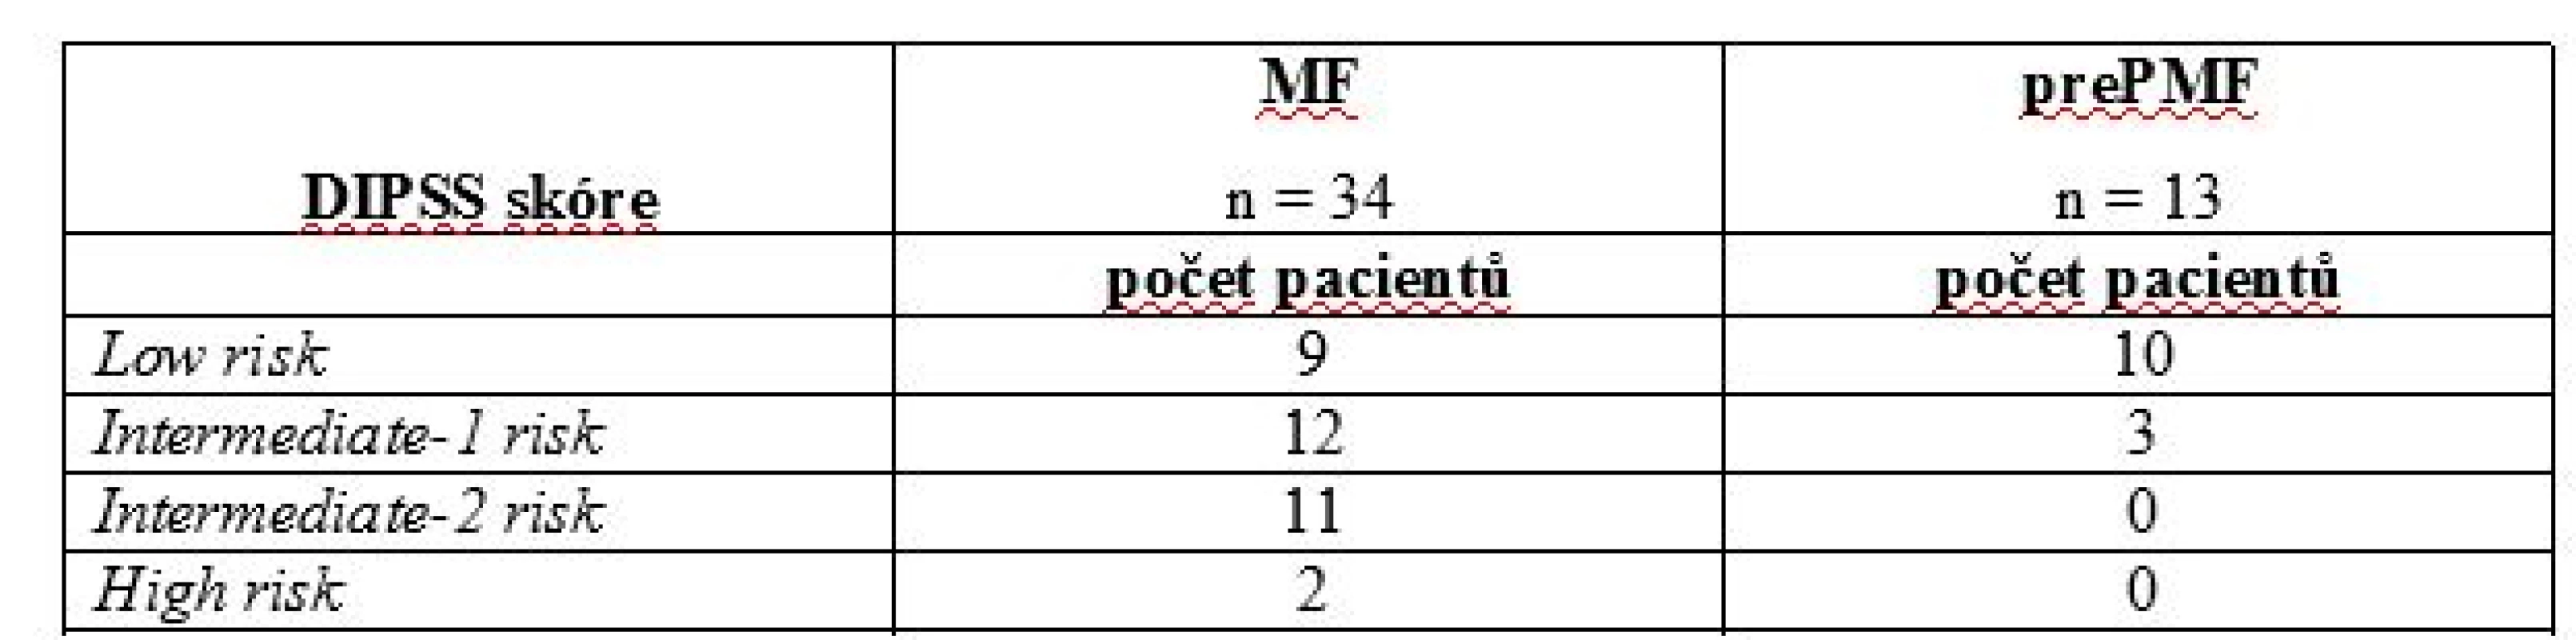 DIPSS skóre u pacientů s MF a prePMF v době analýzy.